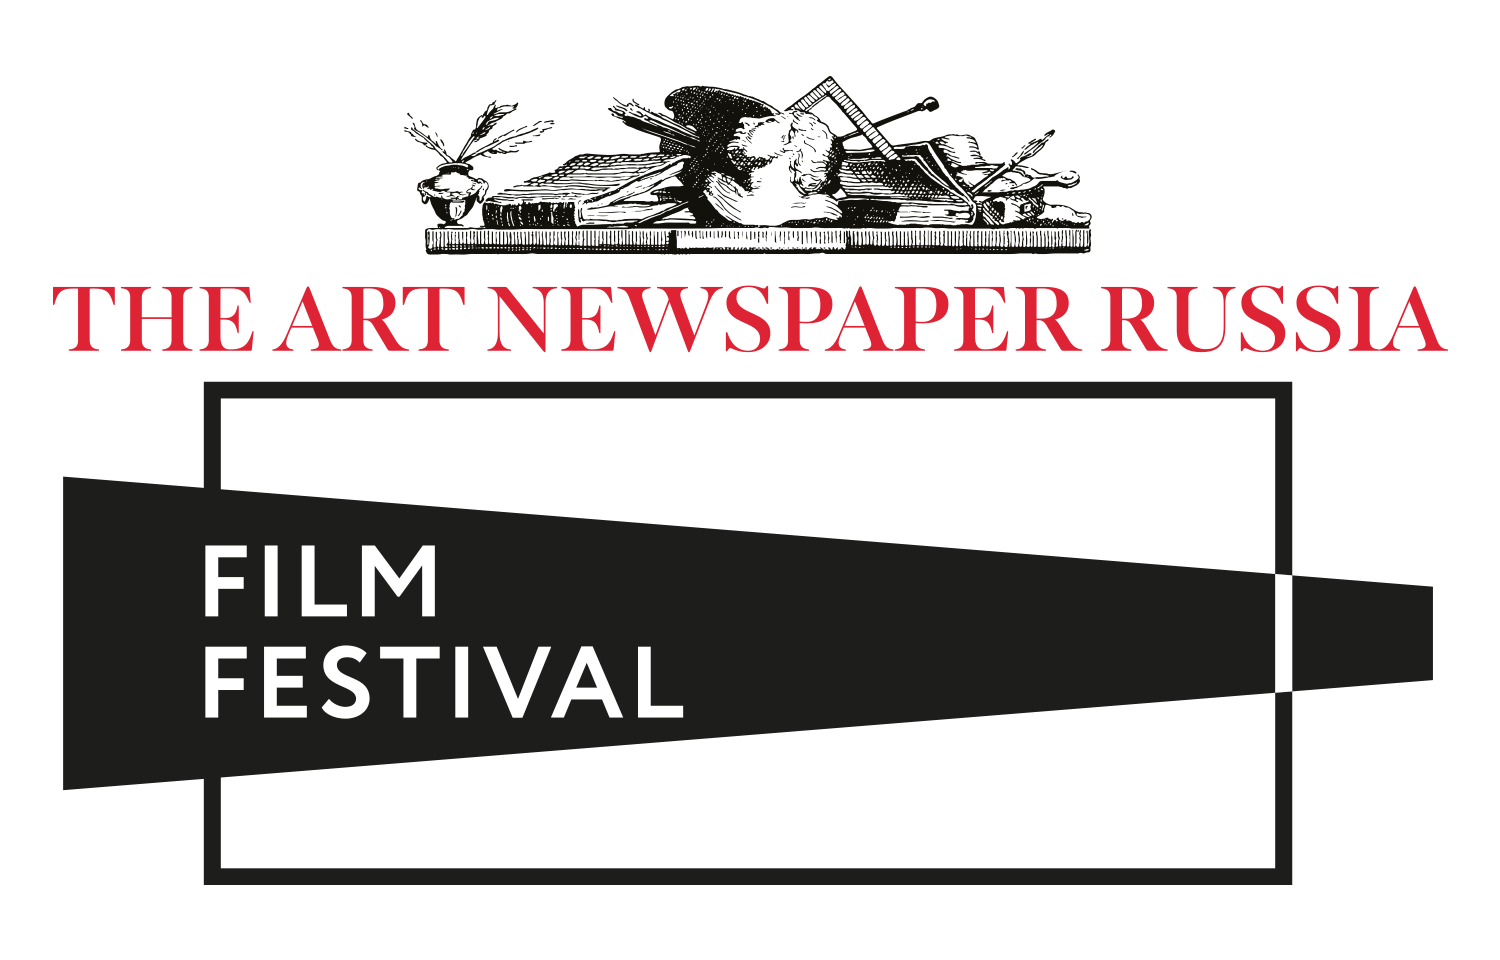 The ART Newspaper Russia FILM FESTIVAL